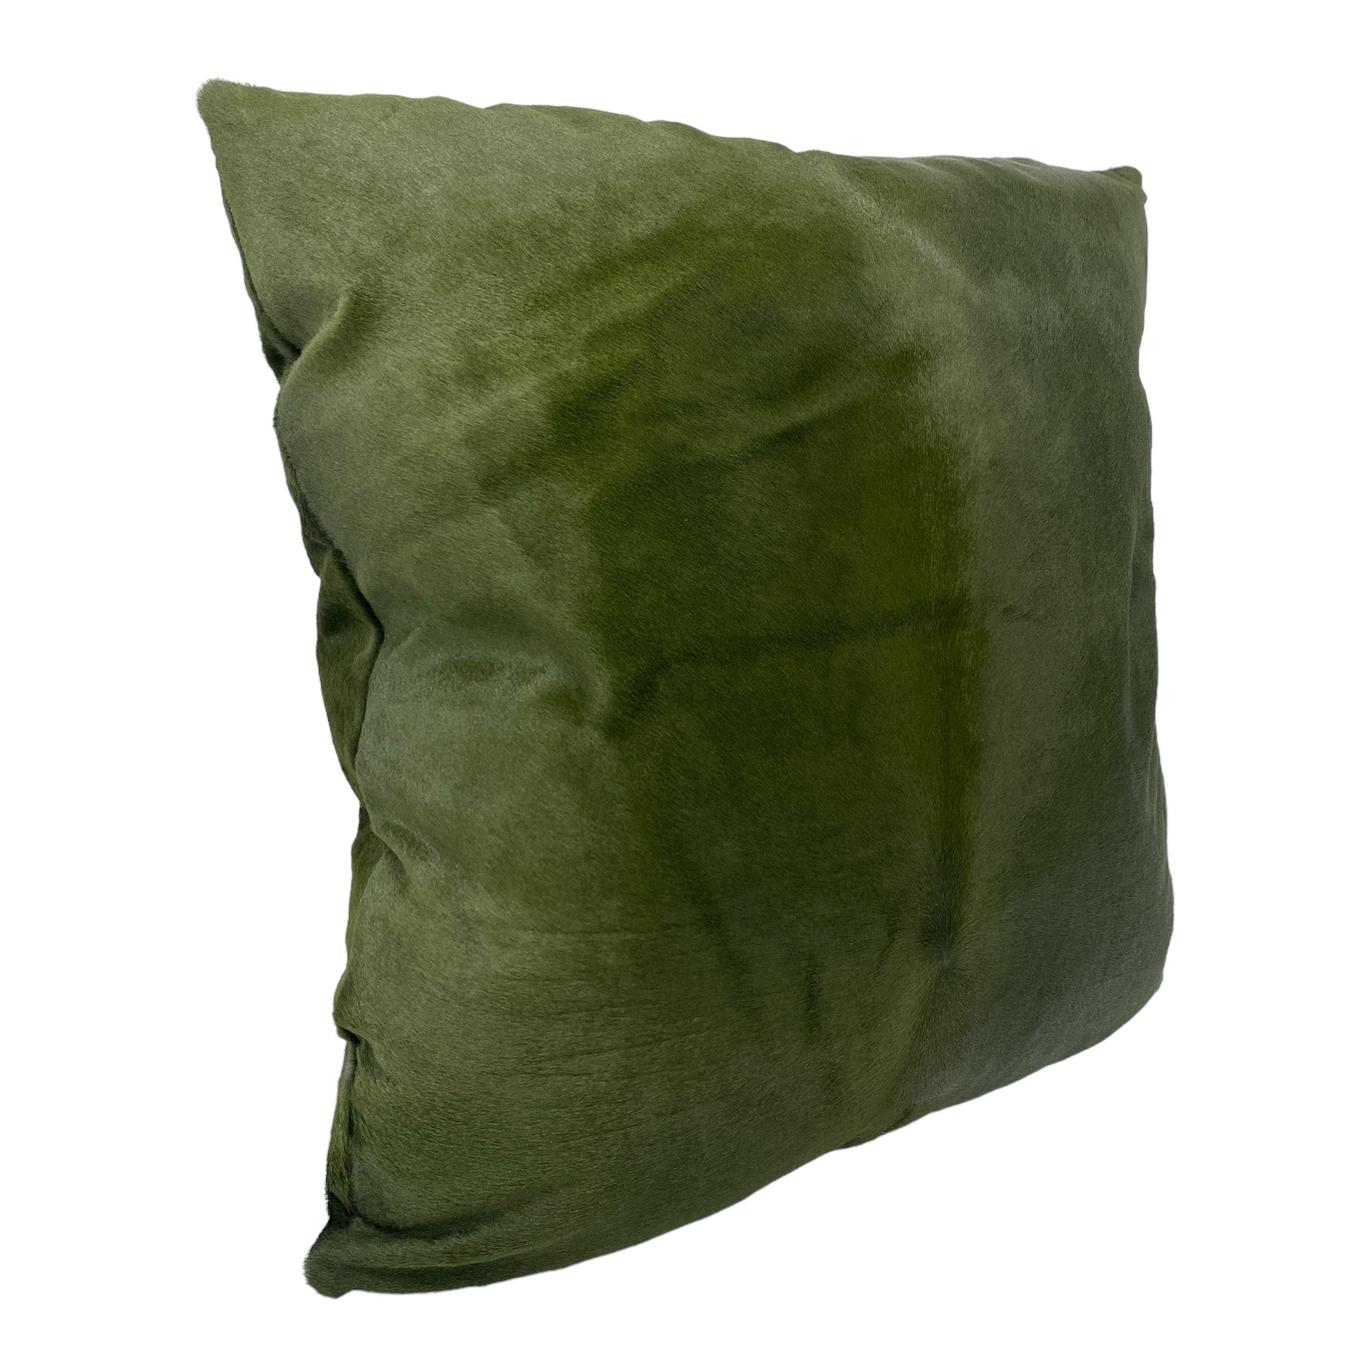 Grünes Lederwurf-Kissen
Unser luxuriöses grünes Kissen mit einem Hauch von Opulenz und grünen Lederpelzakzenten. Beide Seiten sind mit einer üppigen Kurzhaar-Wildledertextur versehen, die für ein üppiges und haptisches Erlebnis sorgt, das jeder